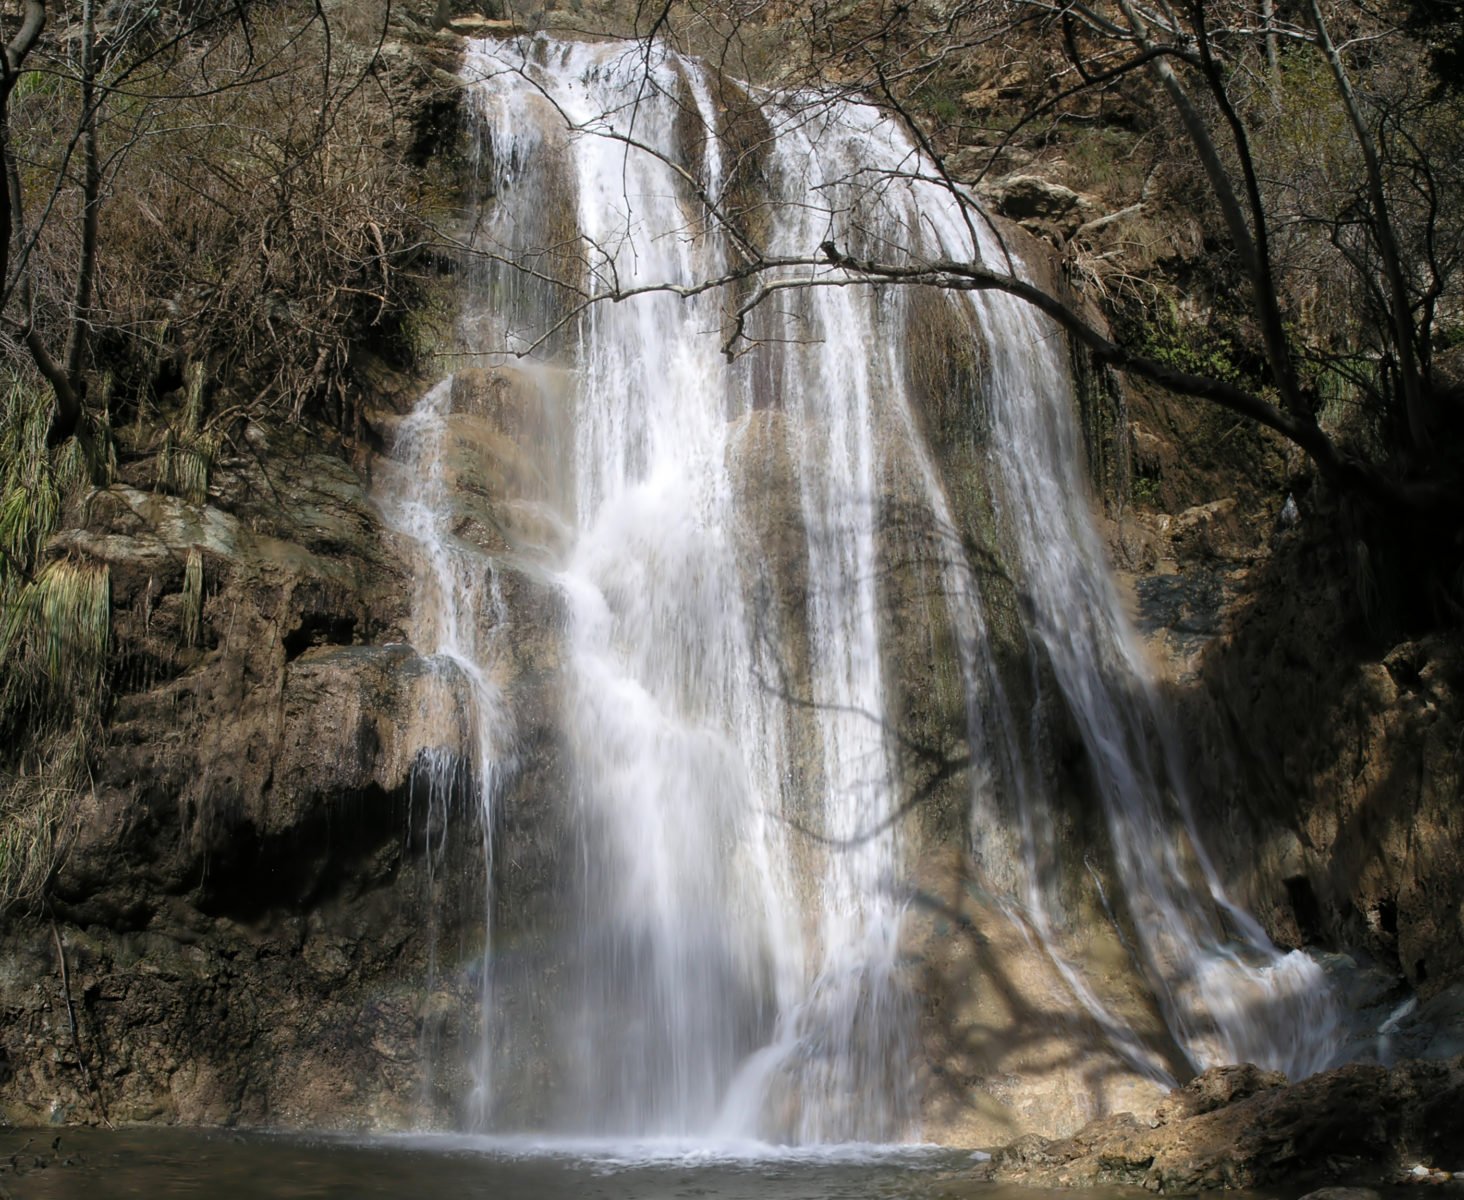 escondido falls in malibu, waterfall